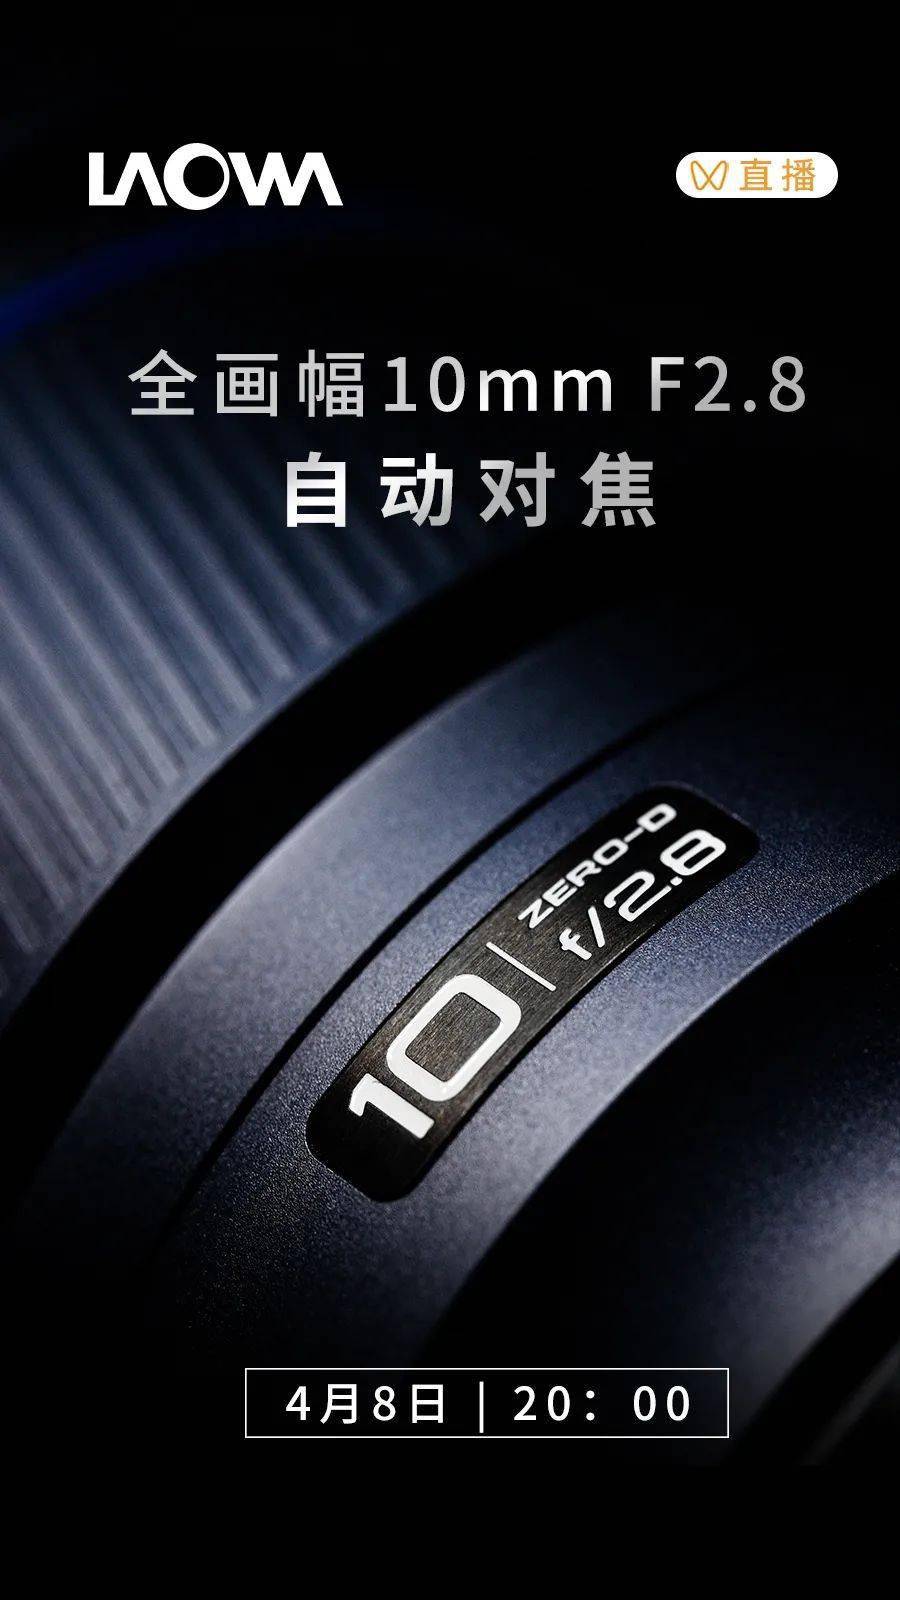 老蛙镜头将于4月8日发布全画幅10mm F2.8自动对焦镜头